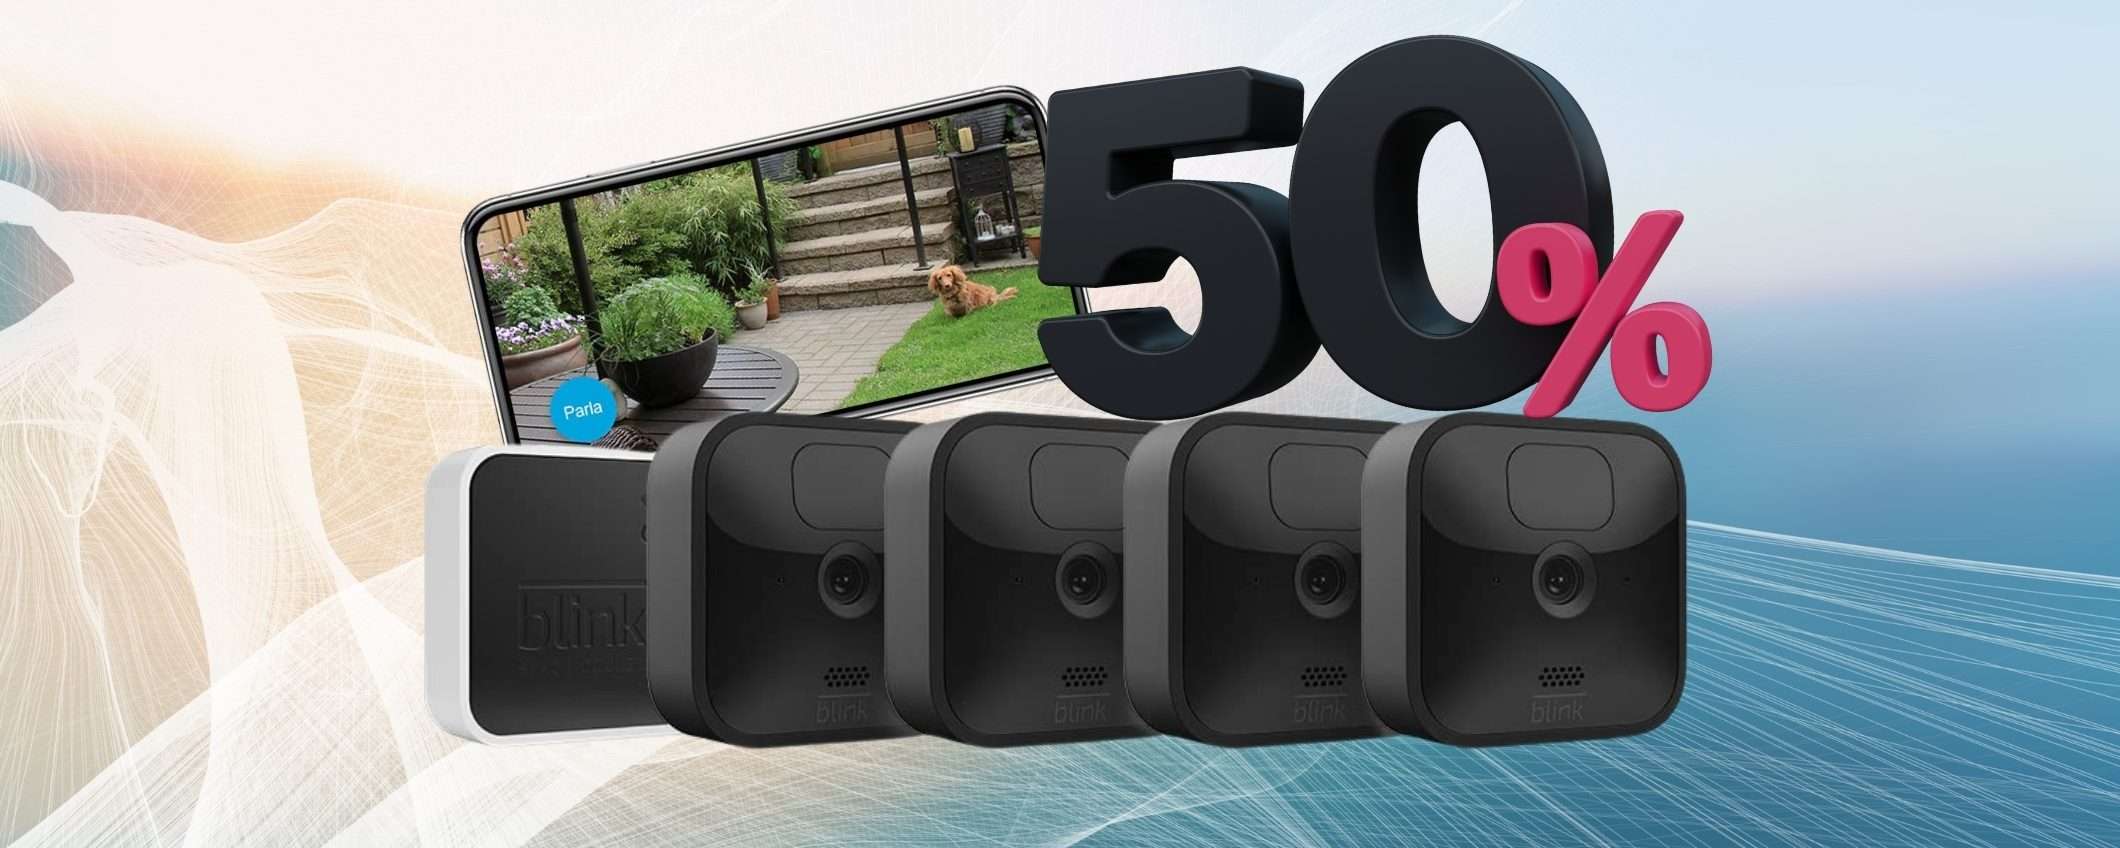 Blink Outdoor: kit con 4 videocamere di sicurezza a METÀ PREZZO